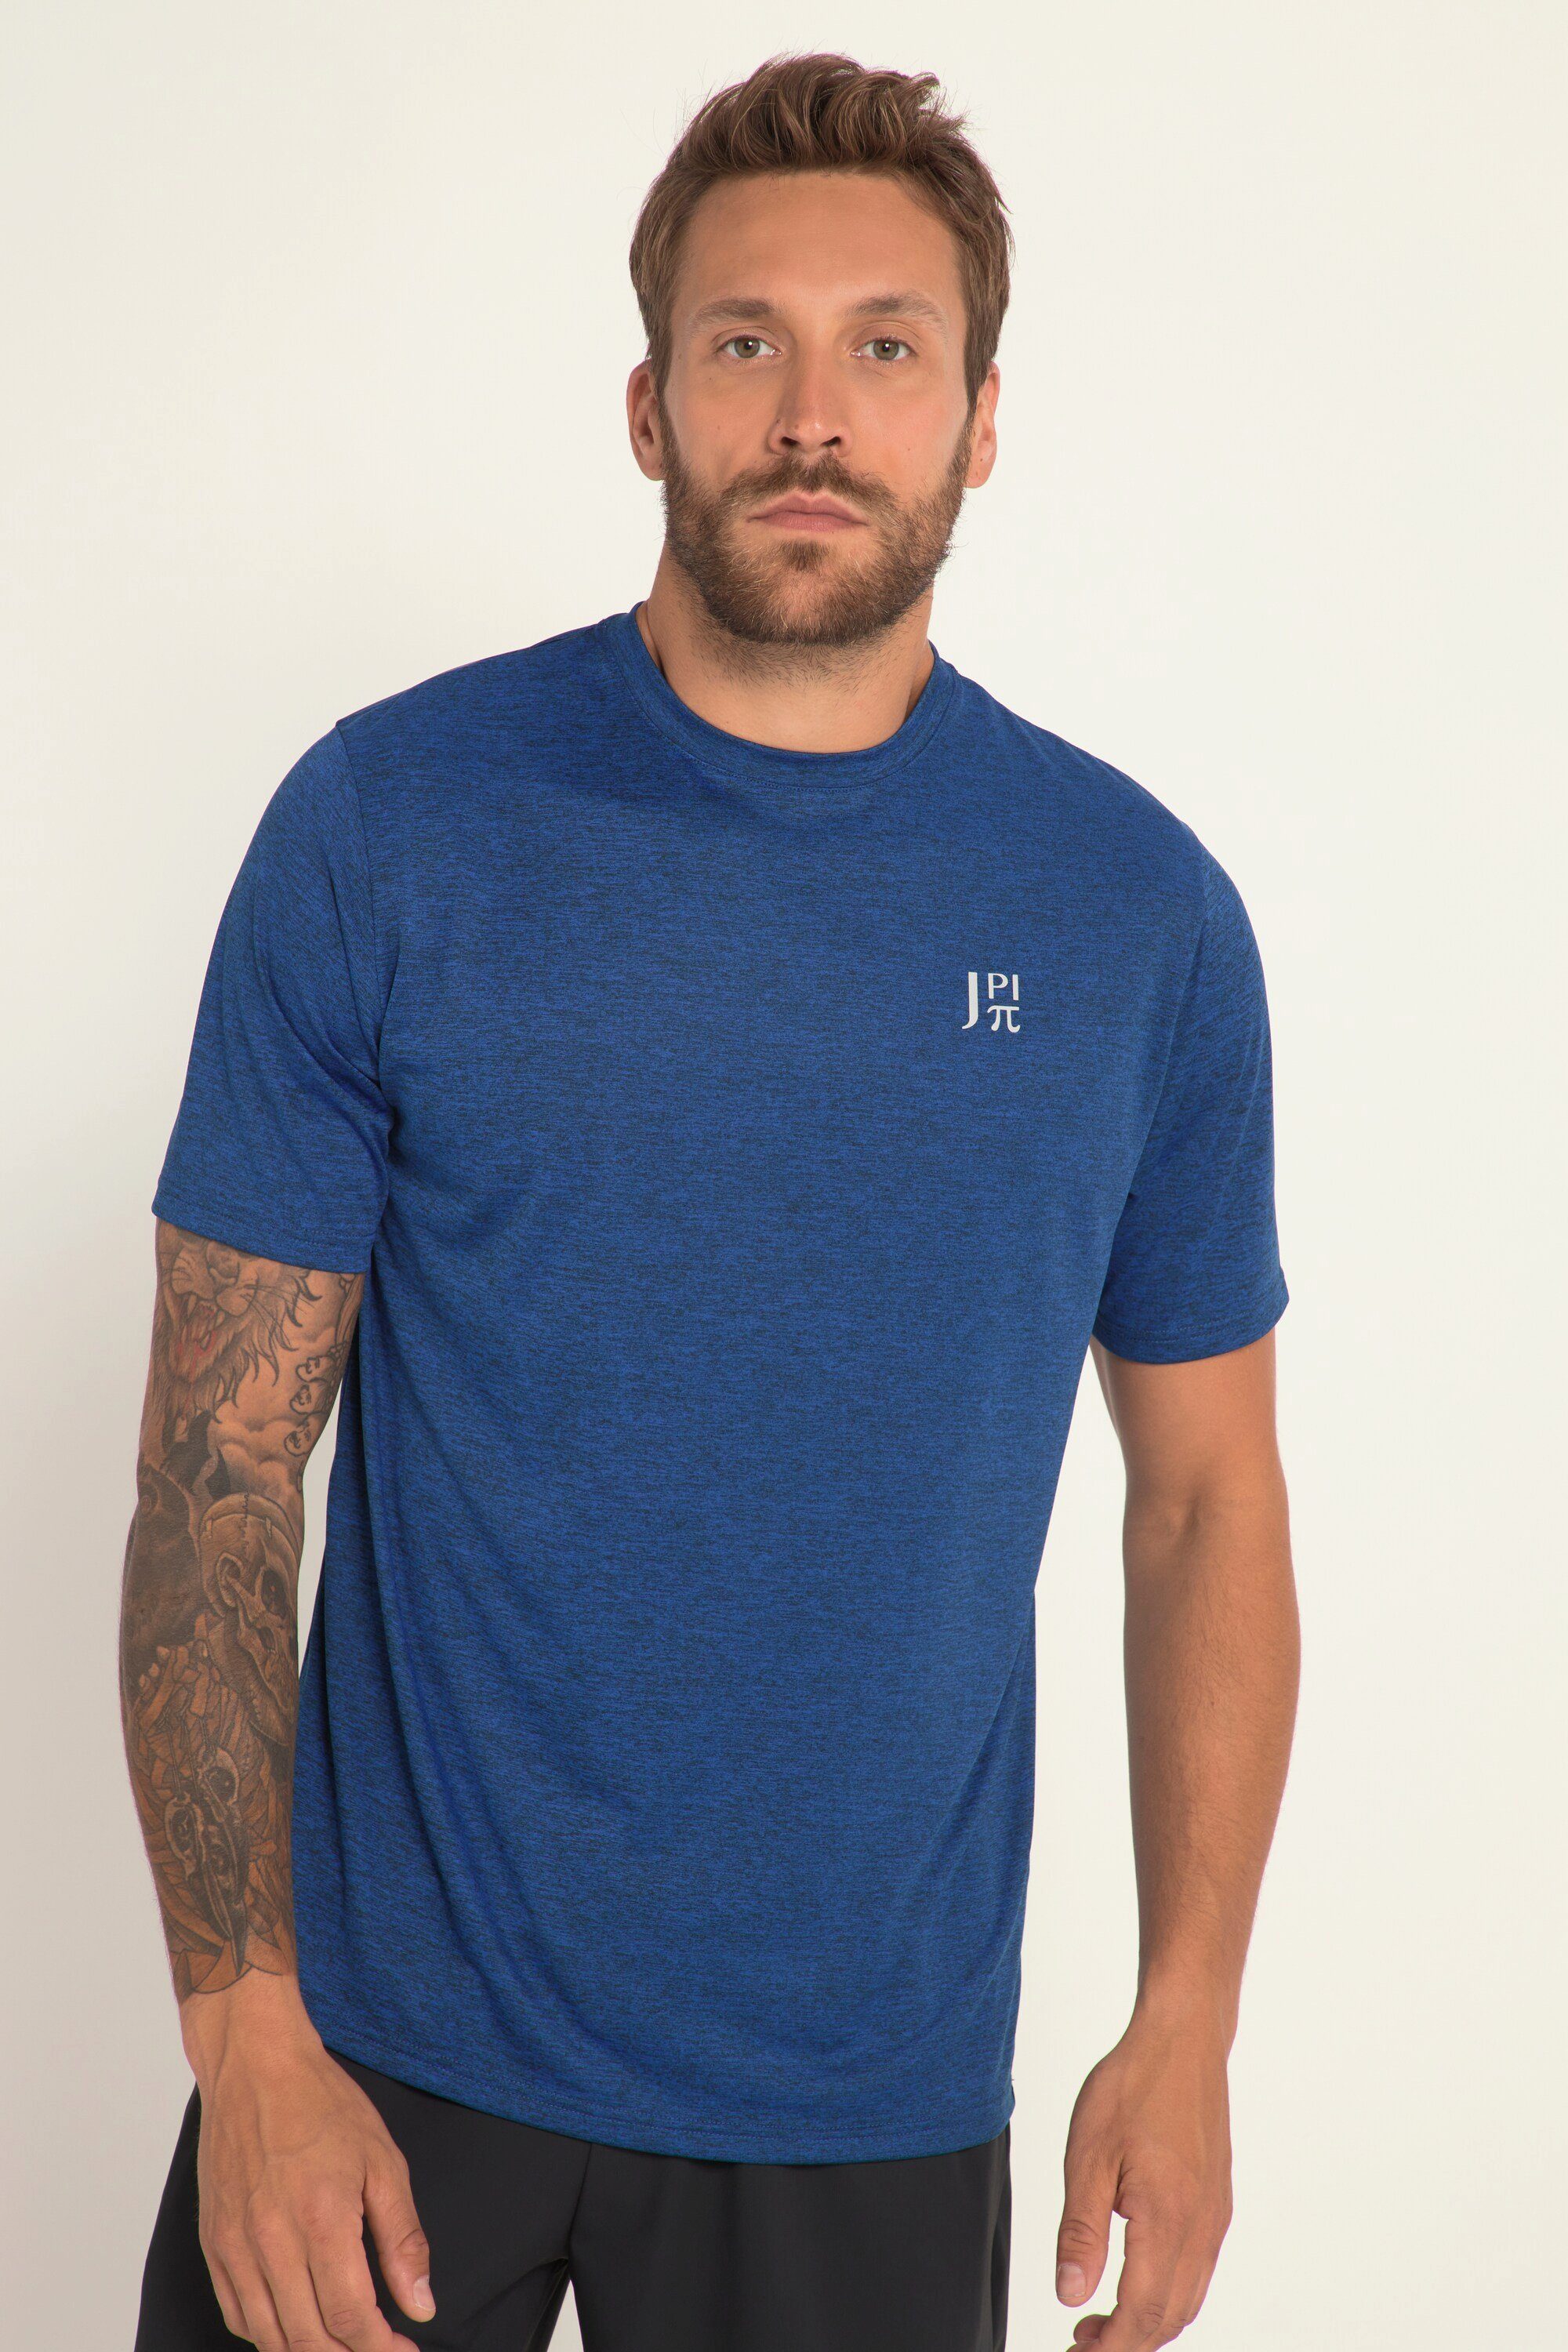 JP1880 T-Shirt Funktions-Shirt FLEXNAMIC® Halbarm blau QuickDry